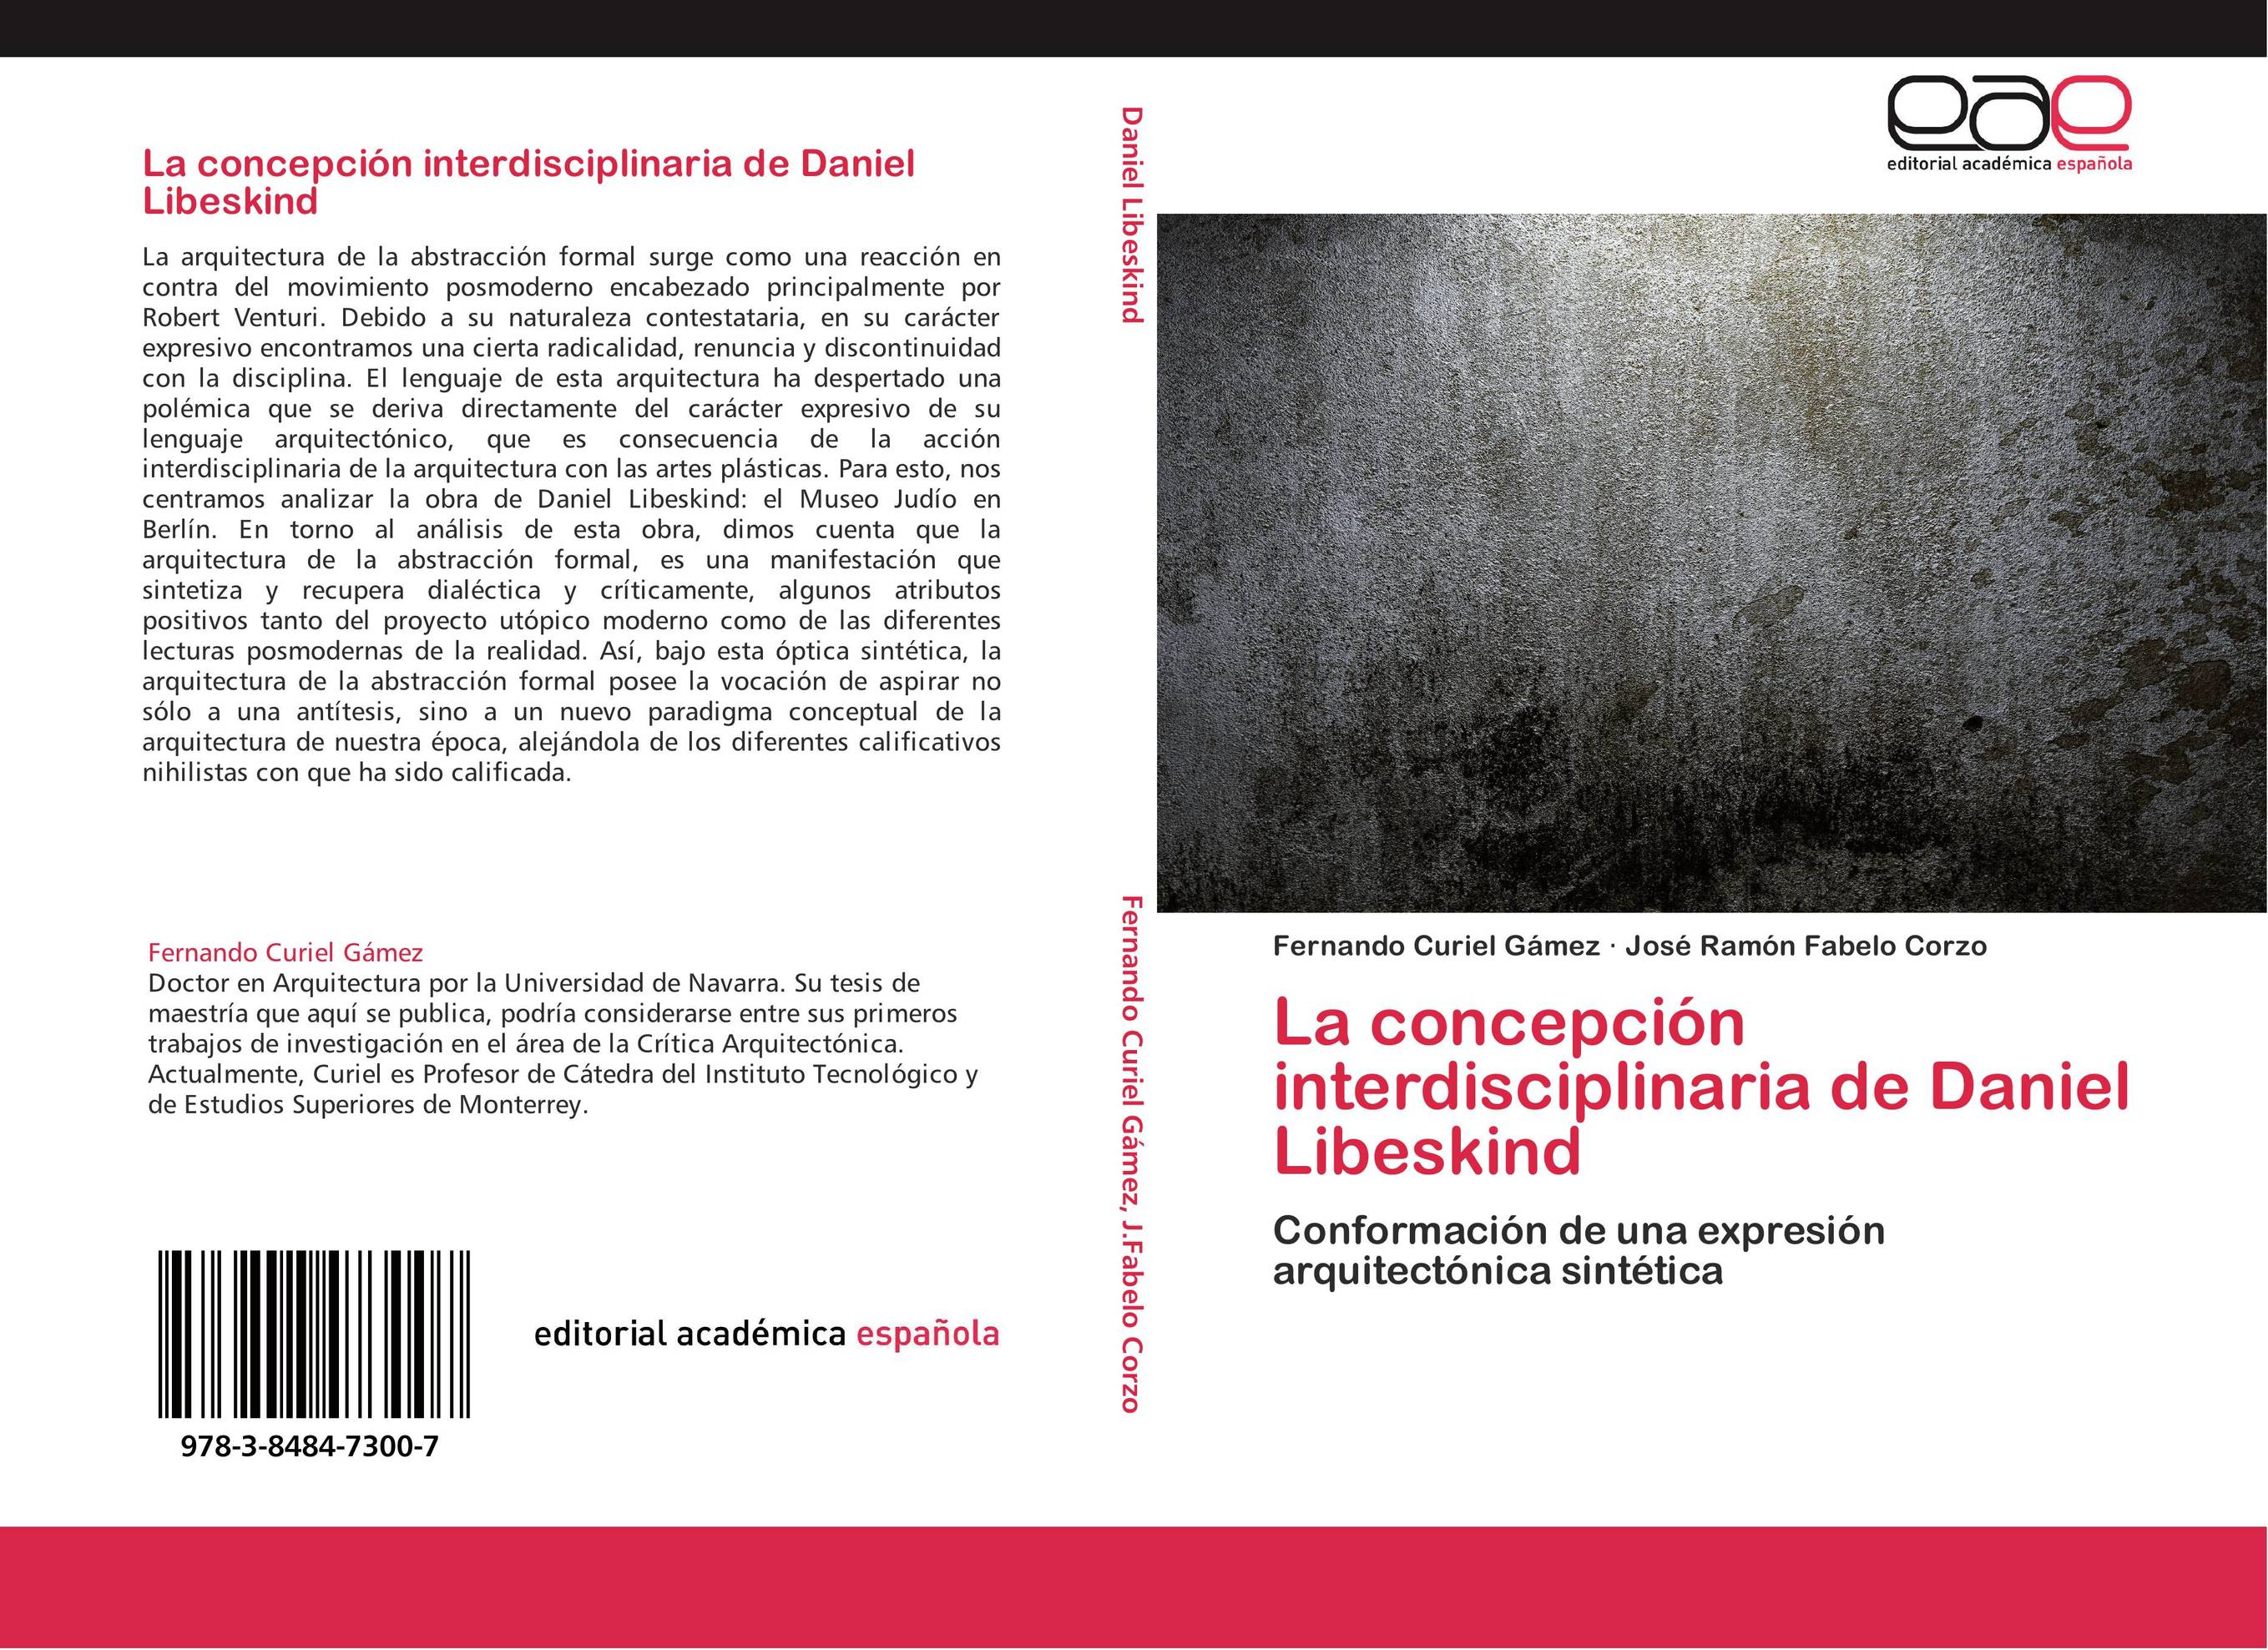 La concepción interdisciplinaria de Daniel Libeskind